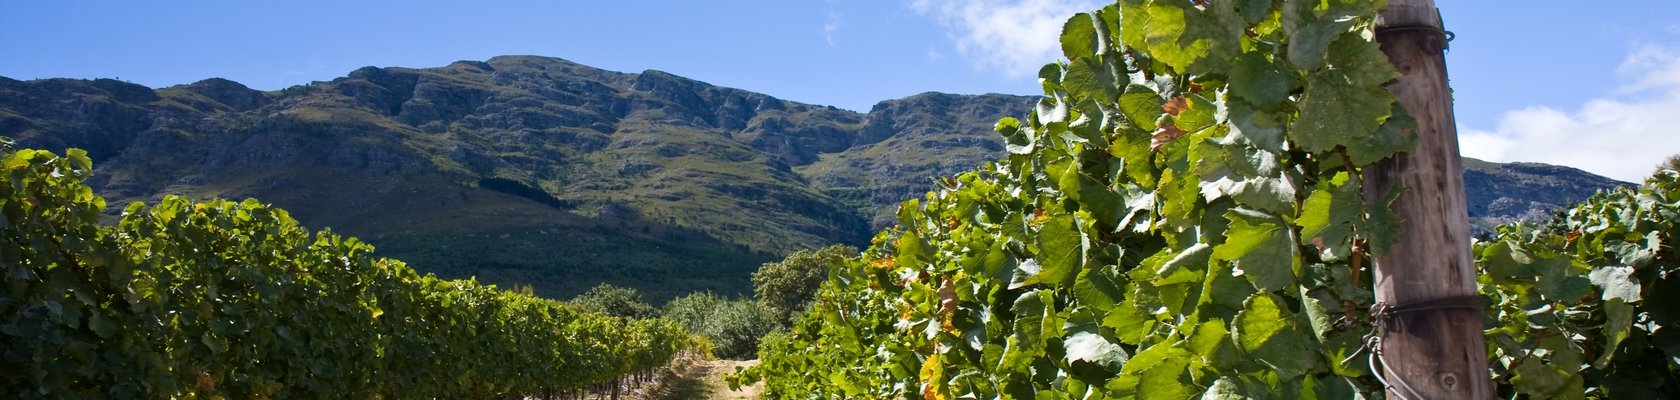 Kaapse wijnlanden